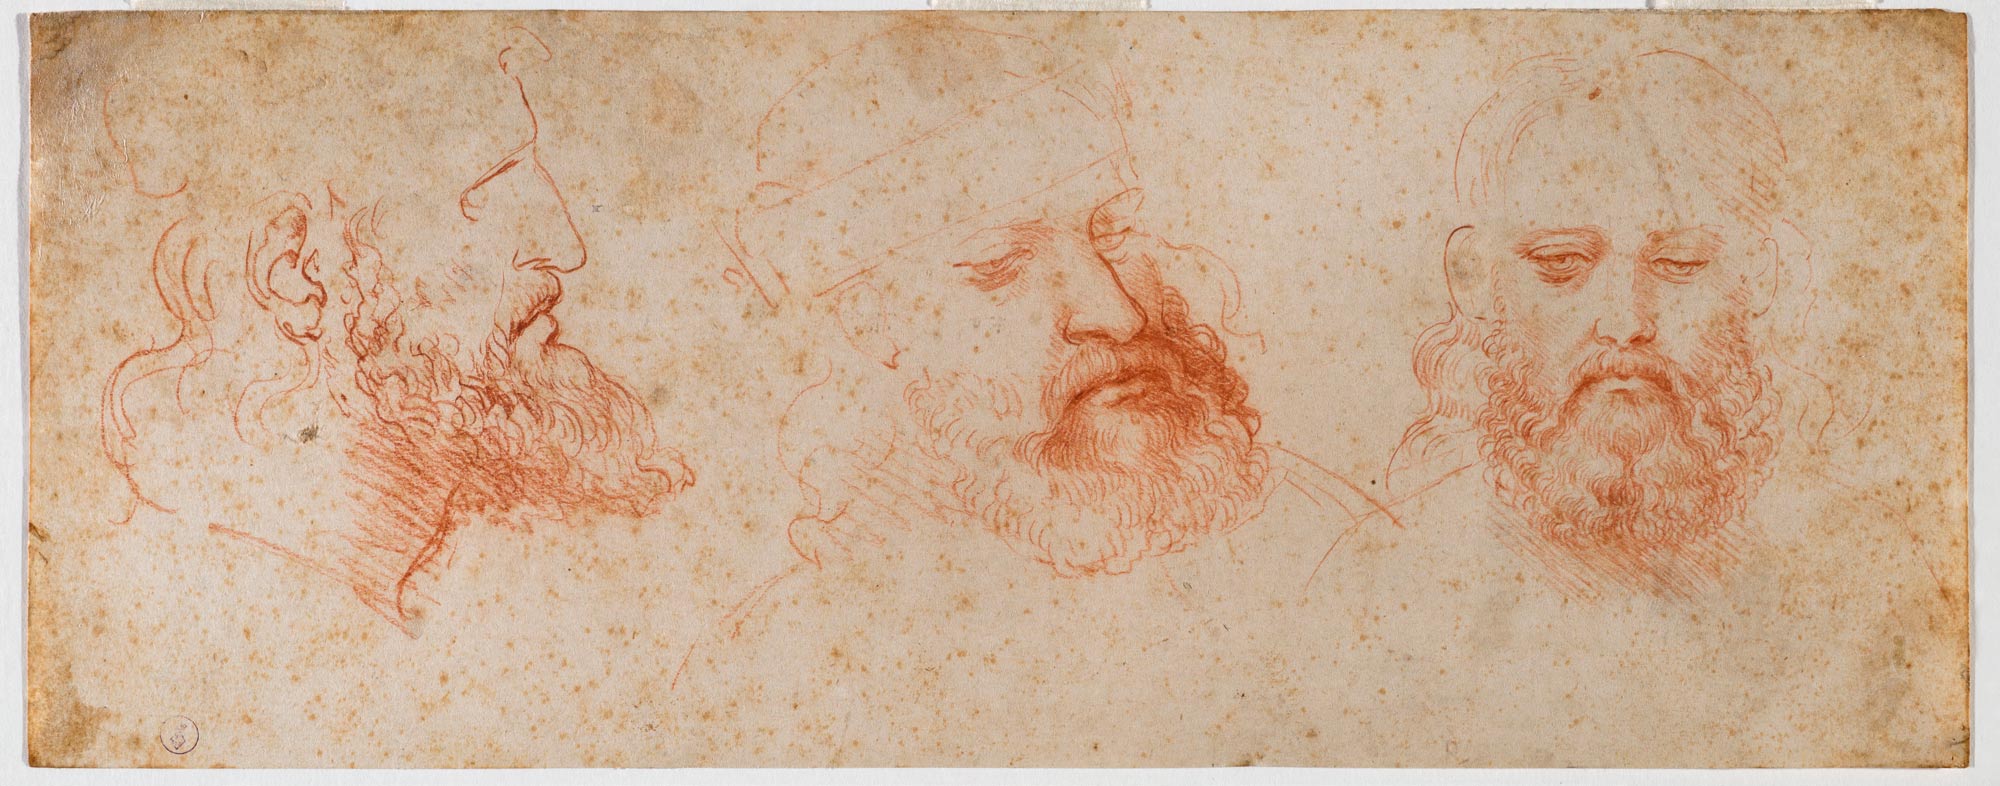 Leonardo da Vinci, Tre vedute di testa virile con barba (1502 circa; pietra rossa su carta, 110x283 mm; Torino, Musei Reali-Biblioteca Reale, Dis. It. Scat. 1/26; 15573 D.C.)